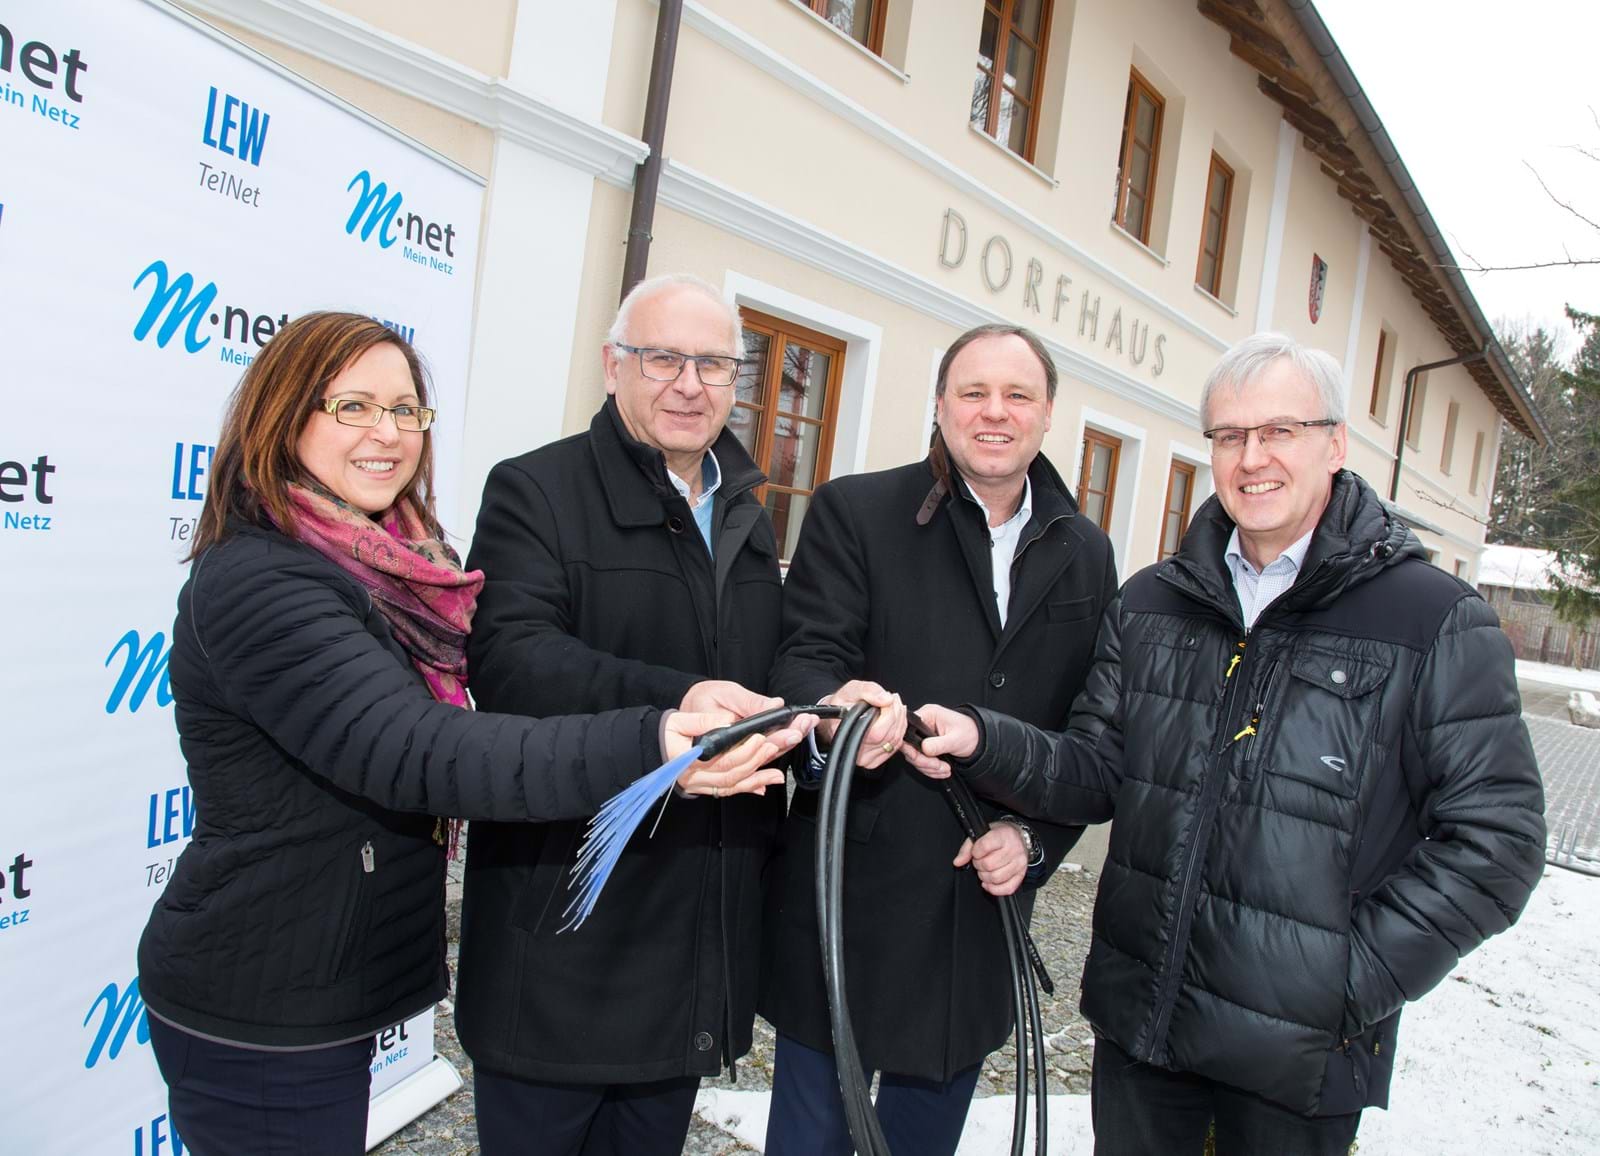 Bürgermeister Konrad Schulze nahm im Gemeindehaus gemeinsam mit LEW TelNet Geschäftsführer Johannes Stepperger und Gabi Emmerling, Regionalbeauftragte Schwaben bei M-net, das erweiterte Breitbandnetz offiziell in Betrieb. 